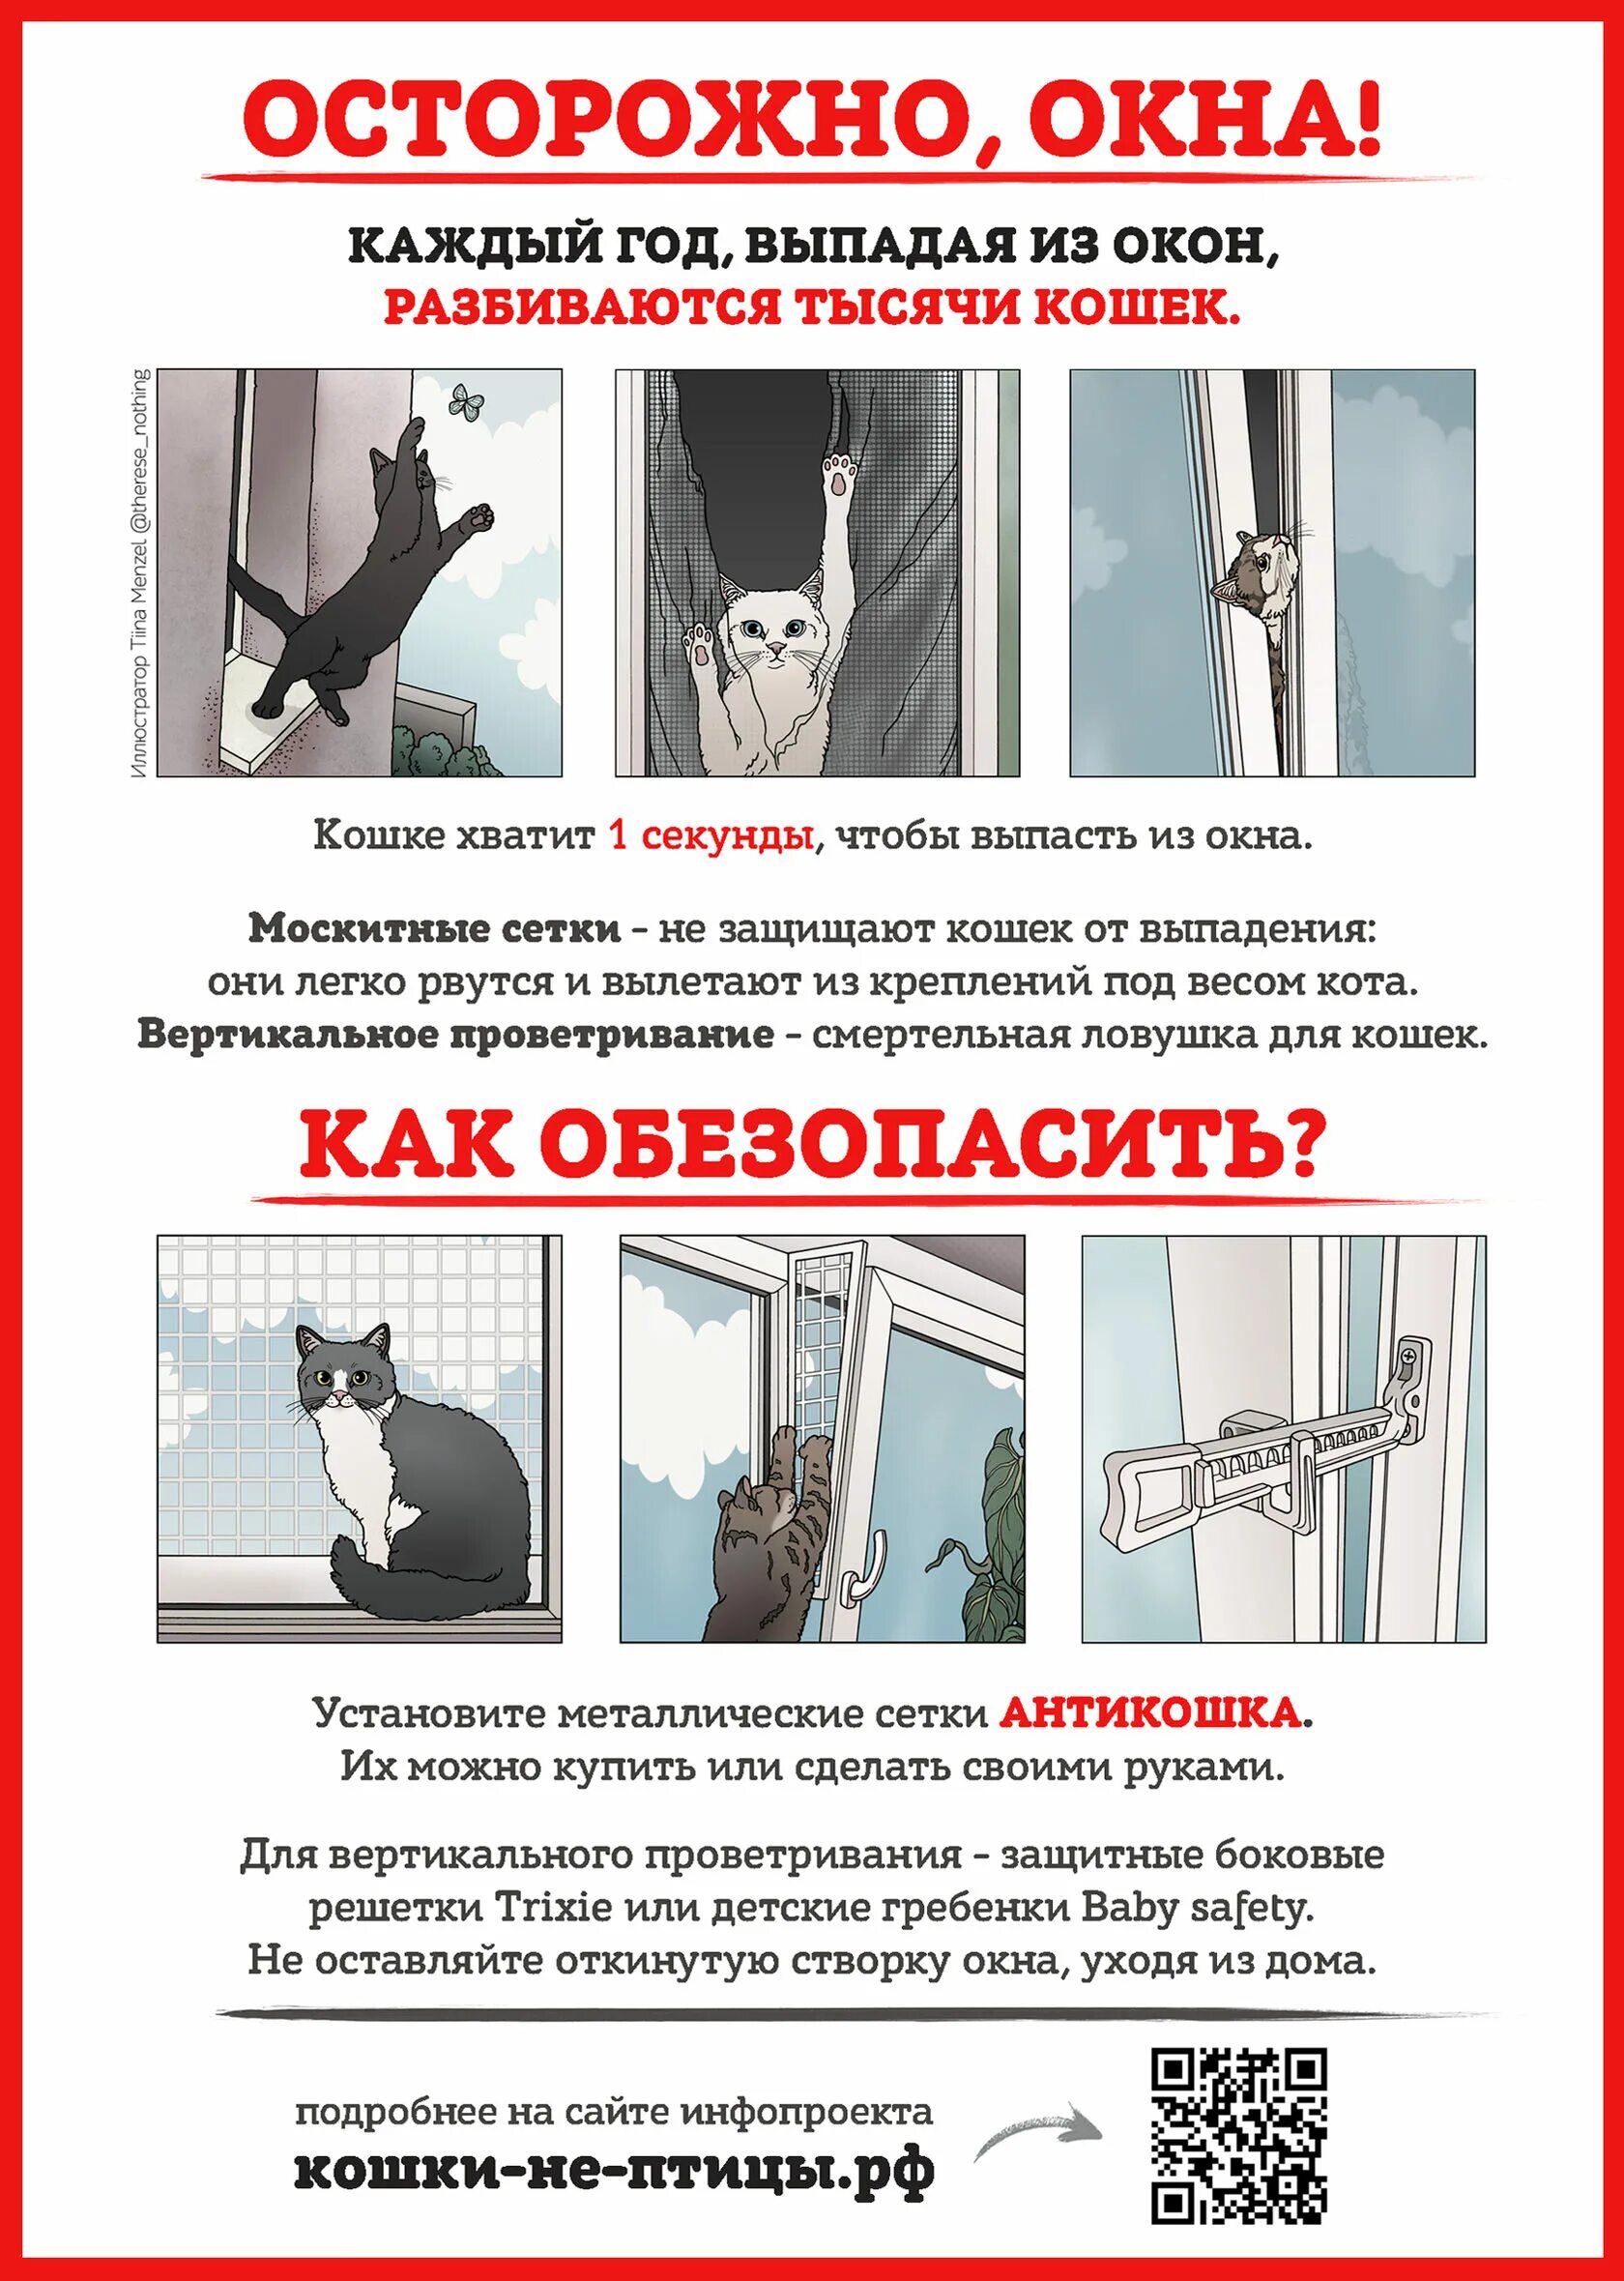 Антикошка на вертикальное проветривание. Безопасное окно для кошек. Осторожно окна для кошек. Осторожно окна.